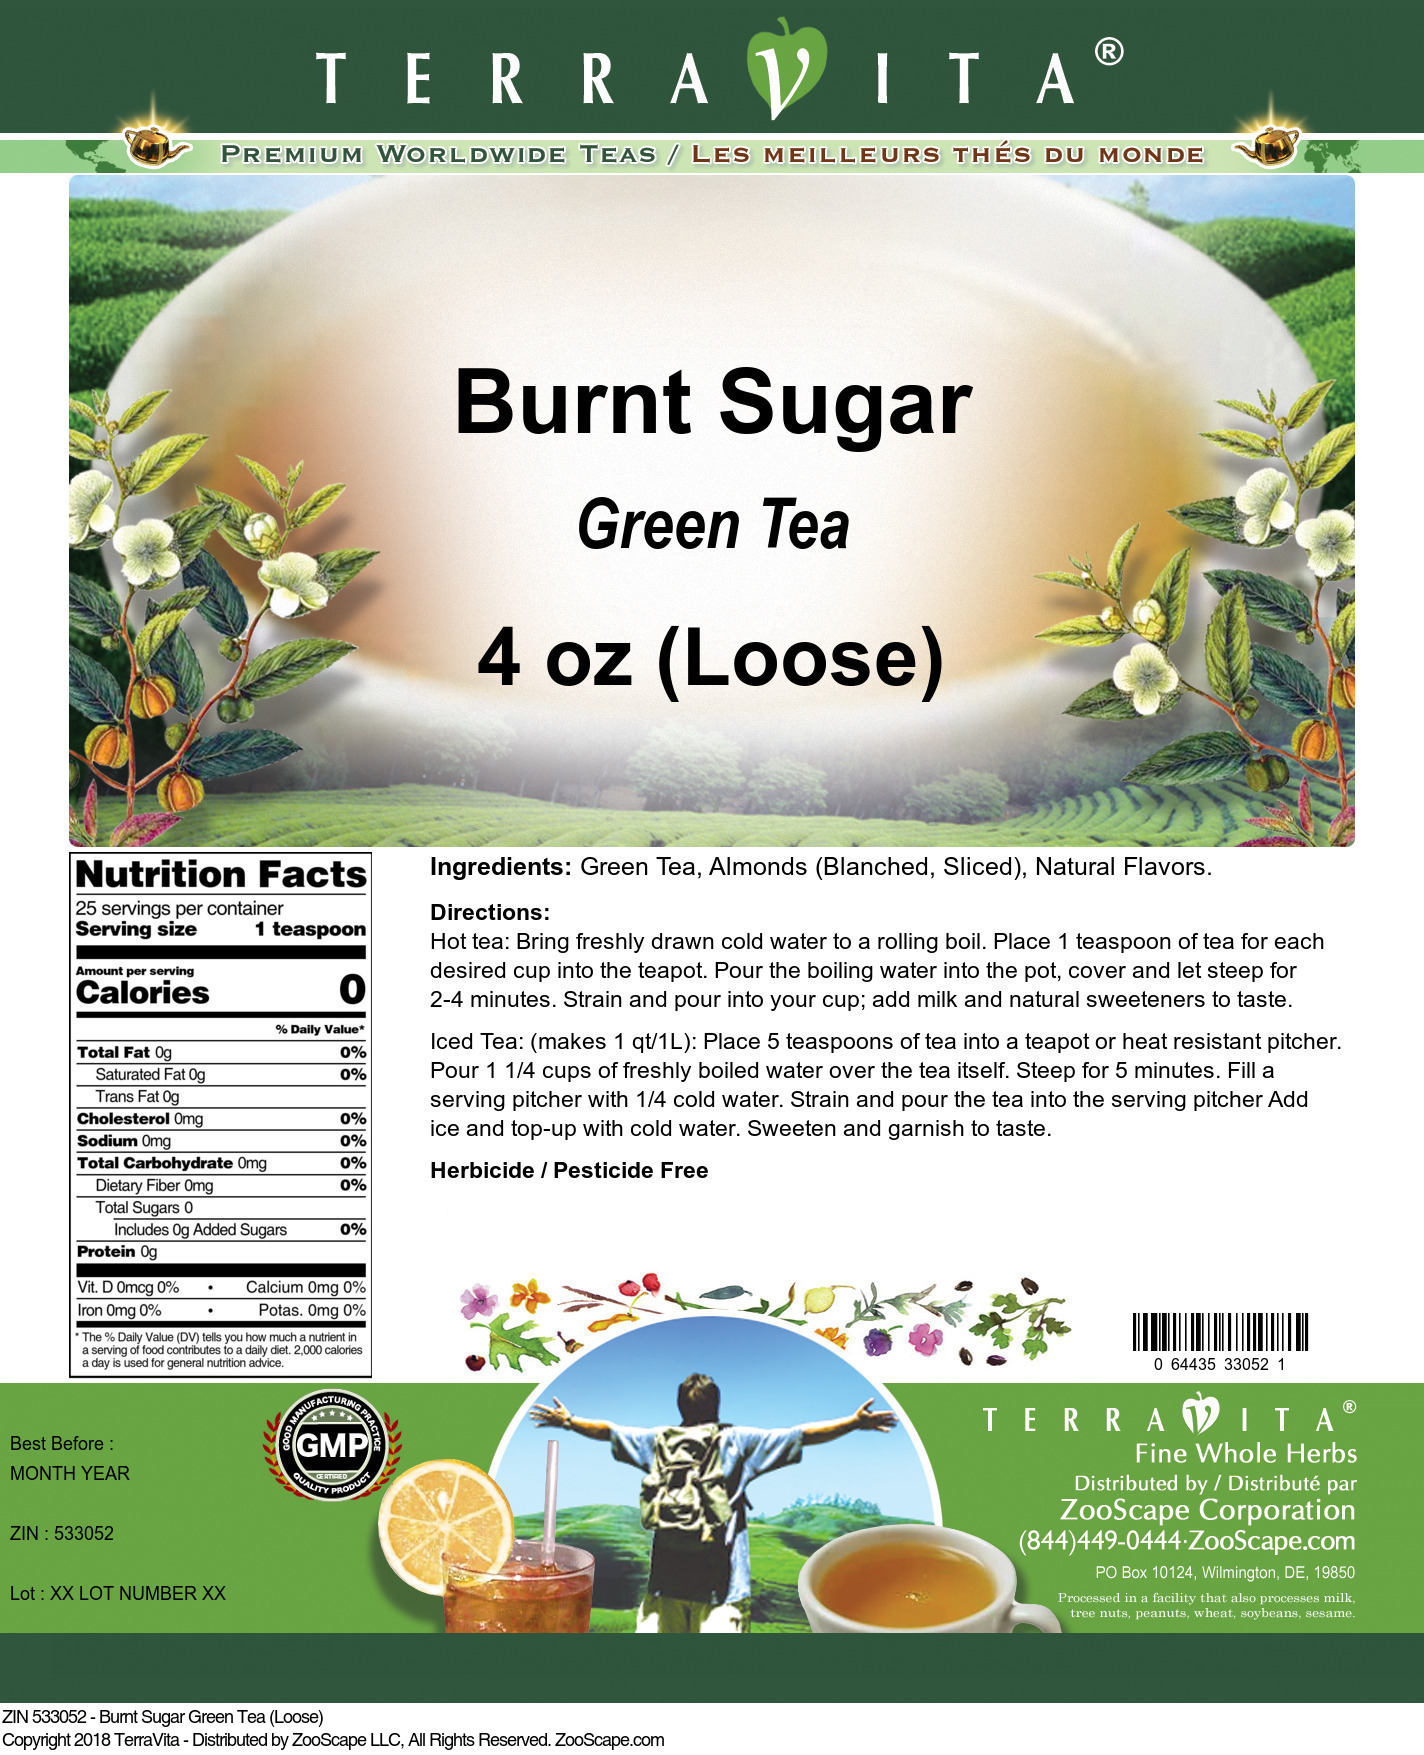 Burnt Sugar Green Tea (Loose) - Label